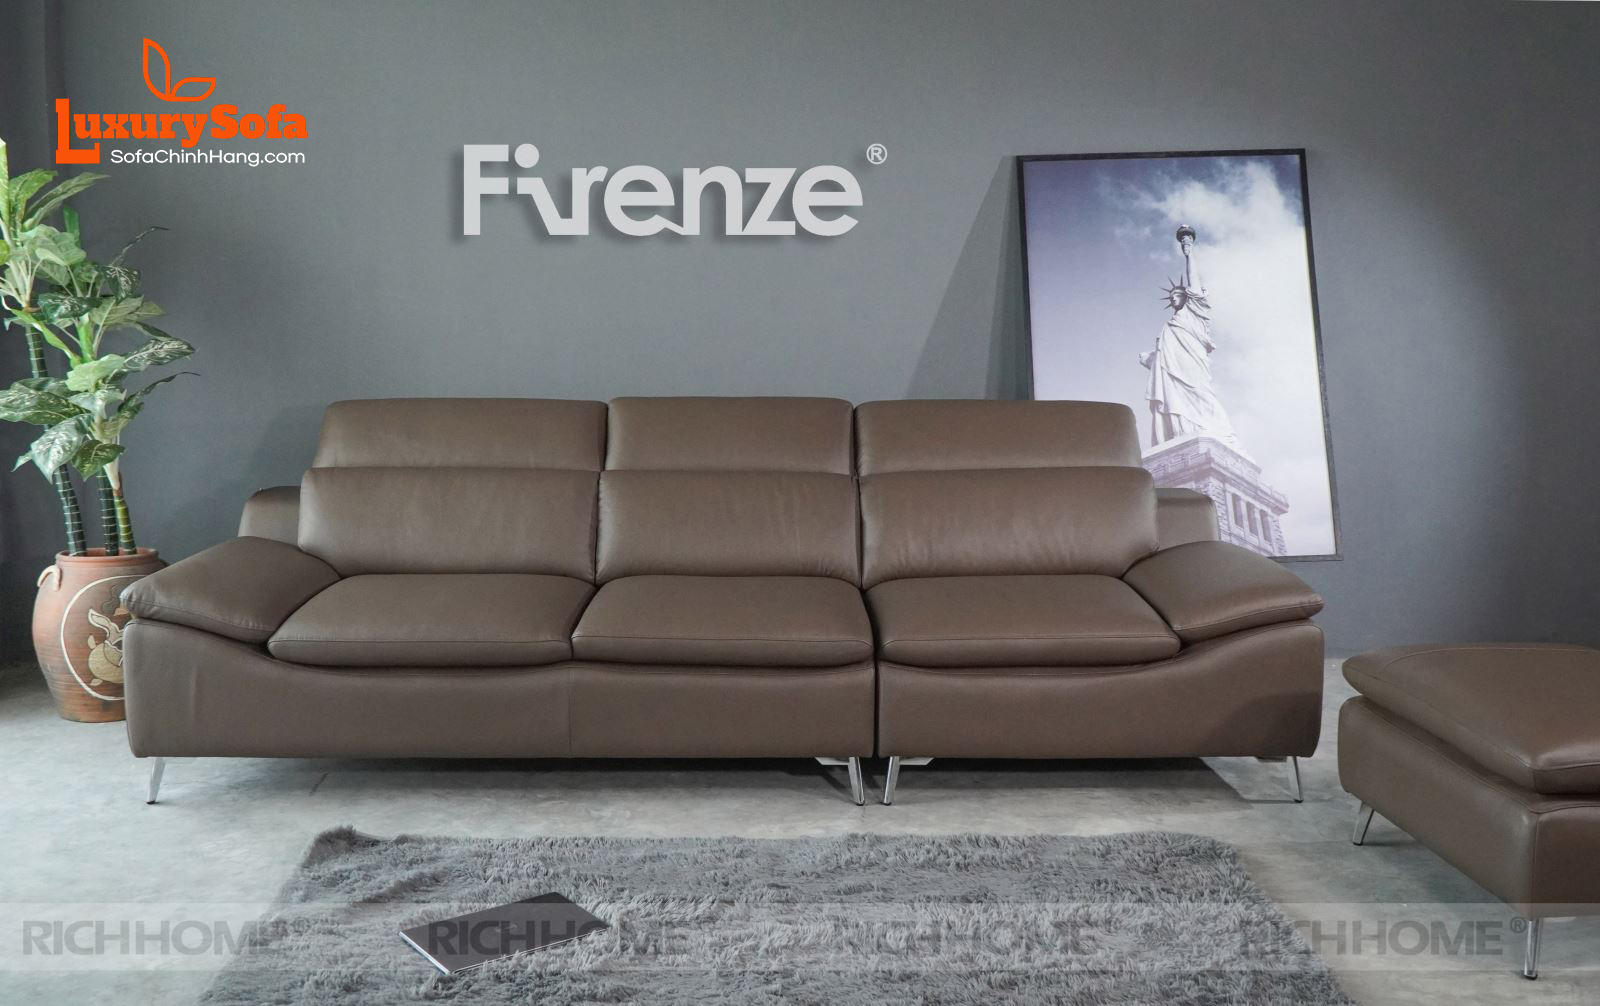 Cách chọn mẫu ghế sofa đẹp nhất cho phòng khách 15m2